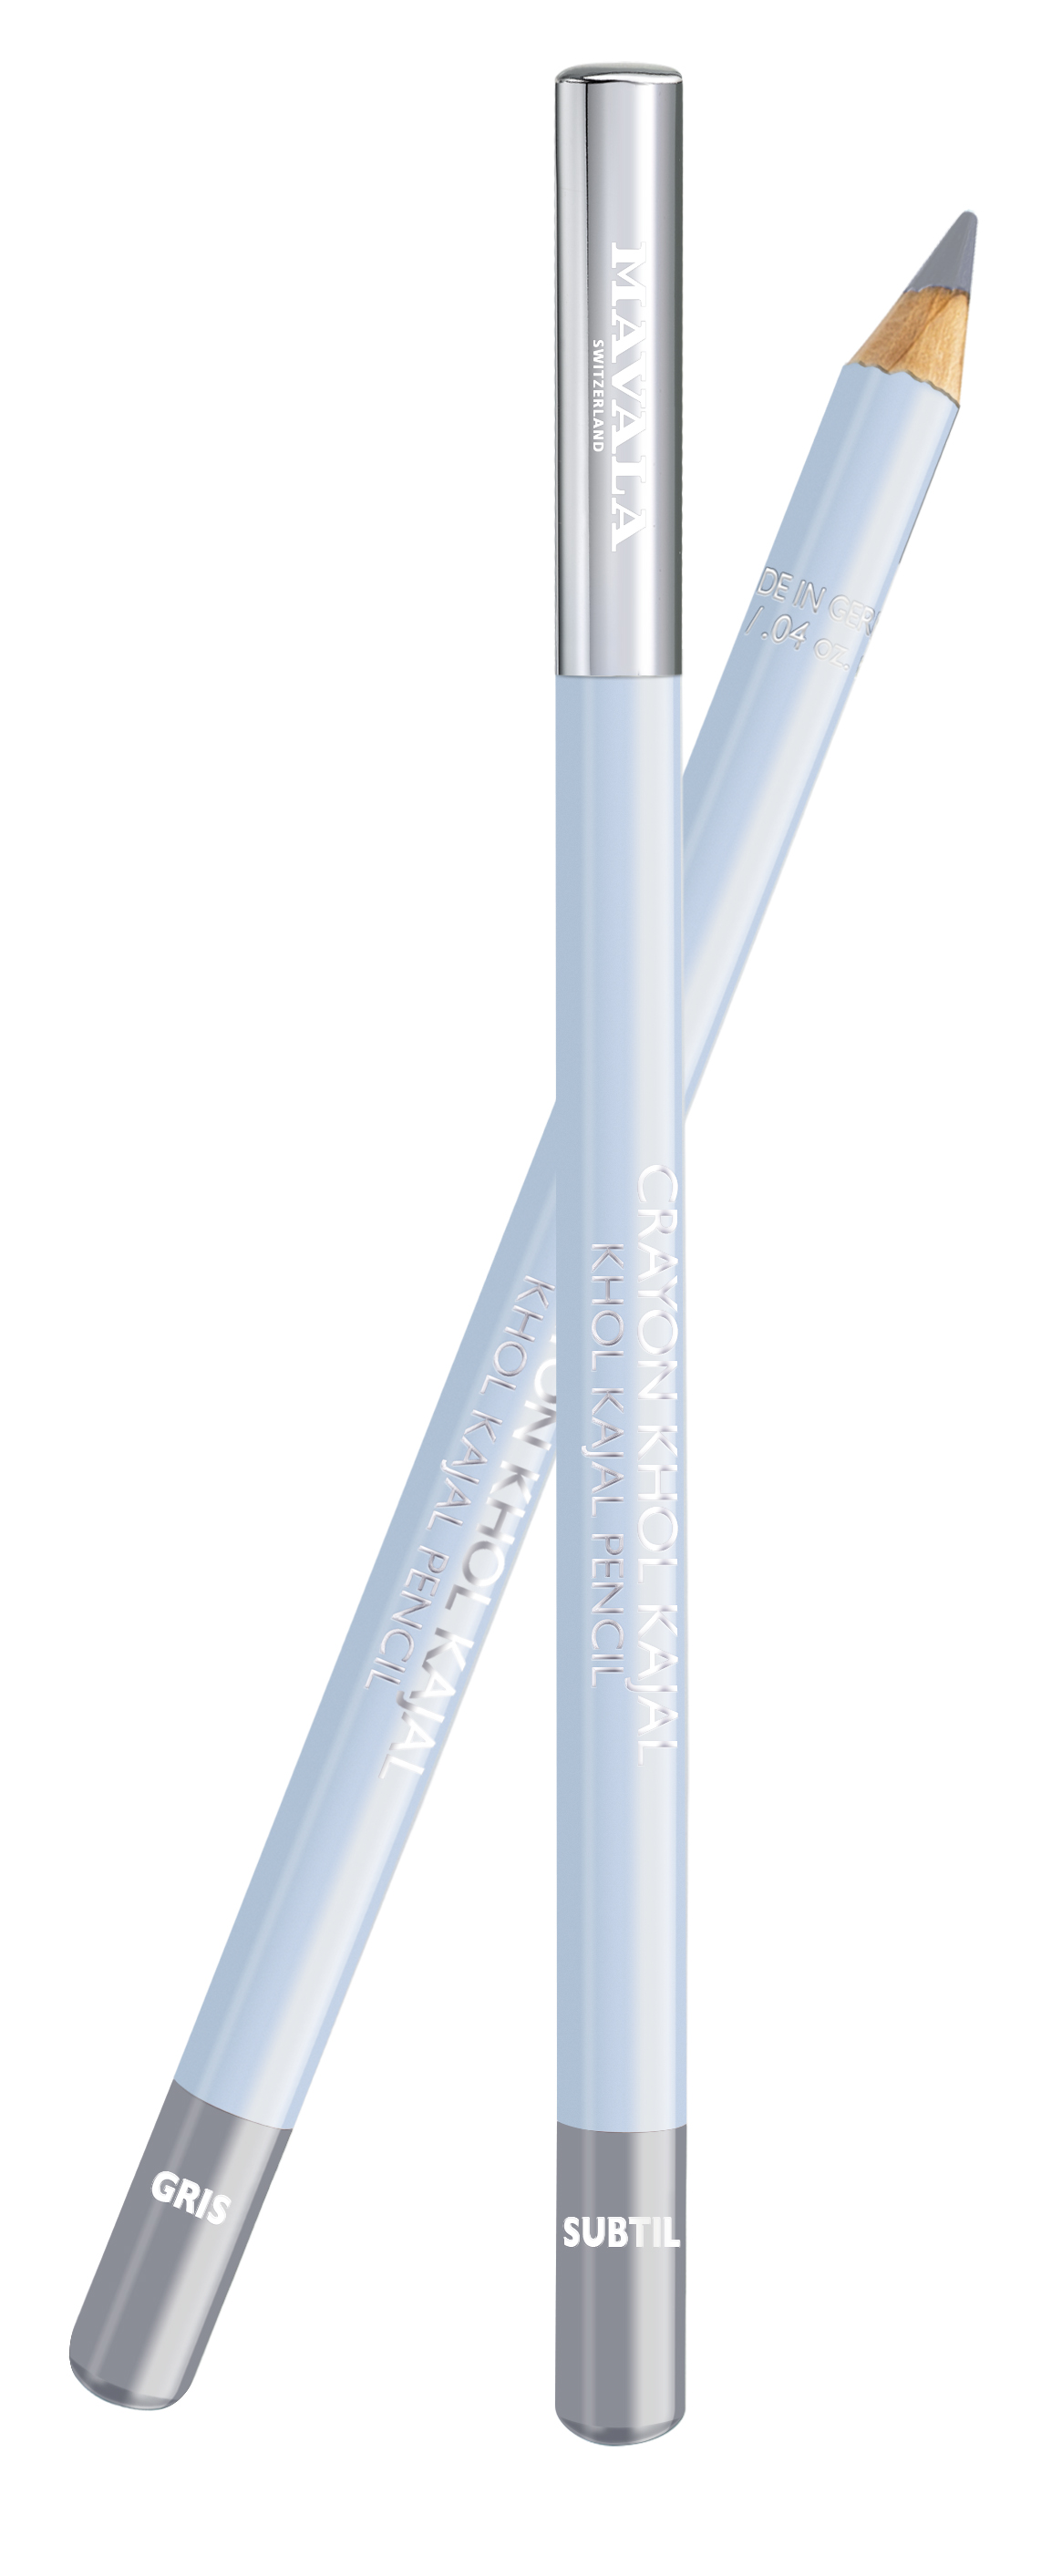 935.17 KHÔL KAJAL - Stift - Gris Subtil (hellgrau) - Augenkontur-Stift für einen strahlend schönen Blick - Vegan